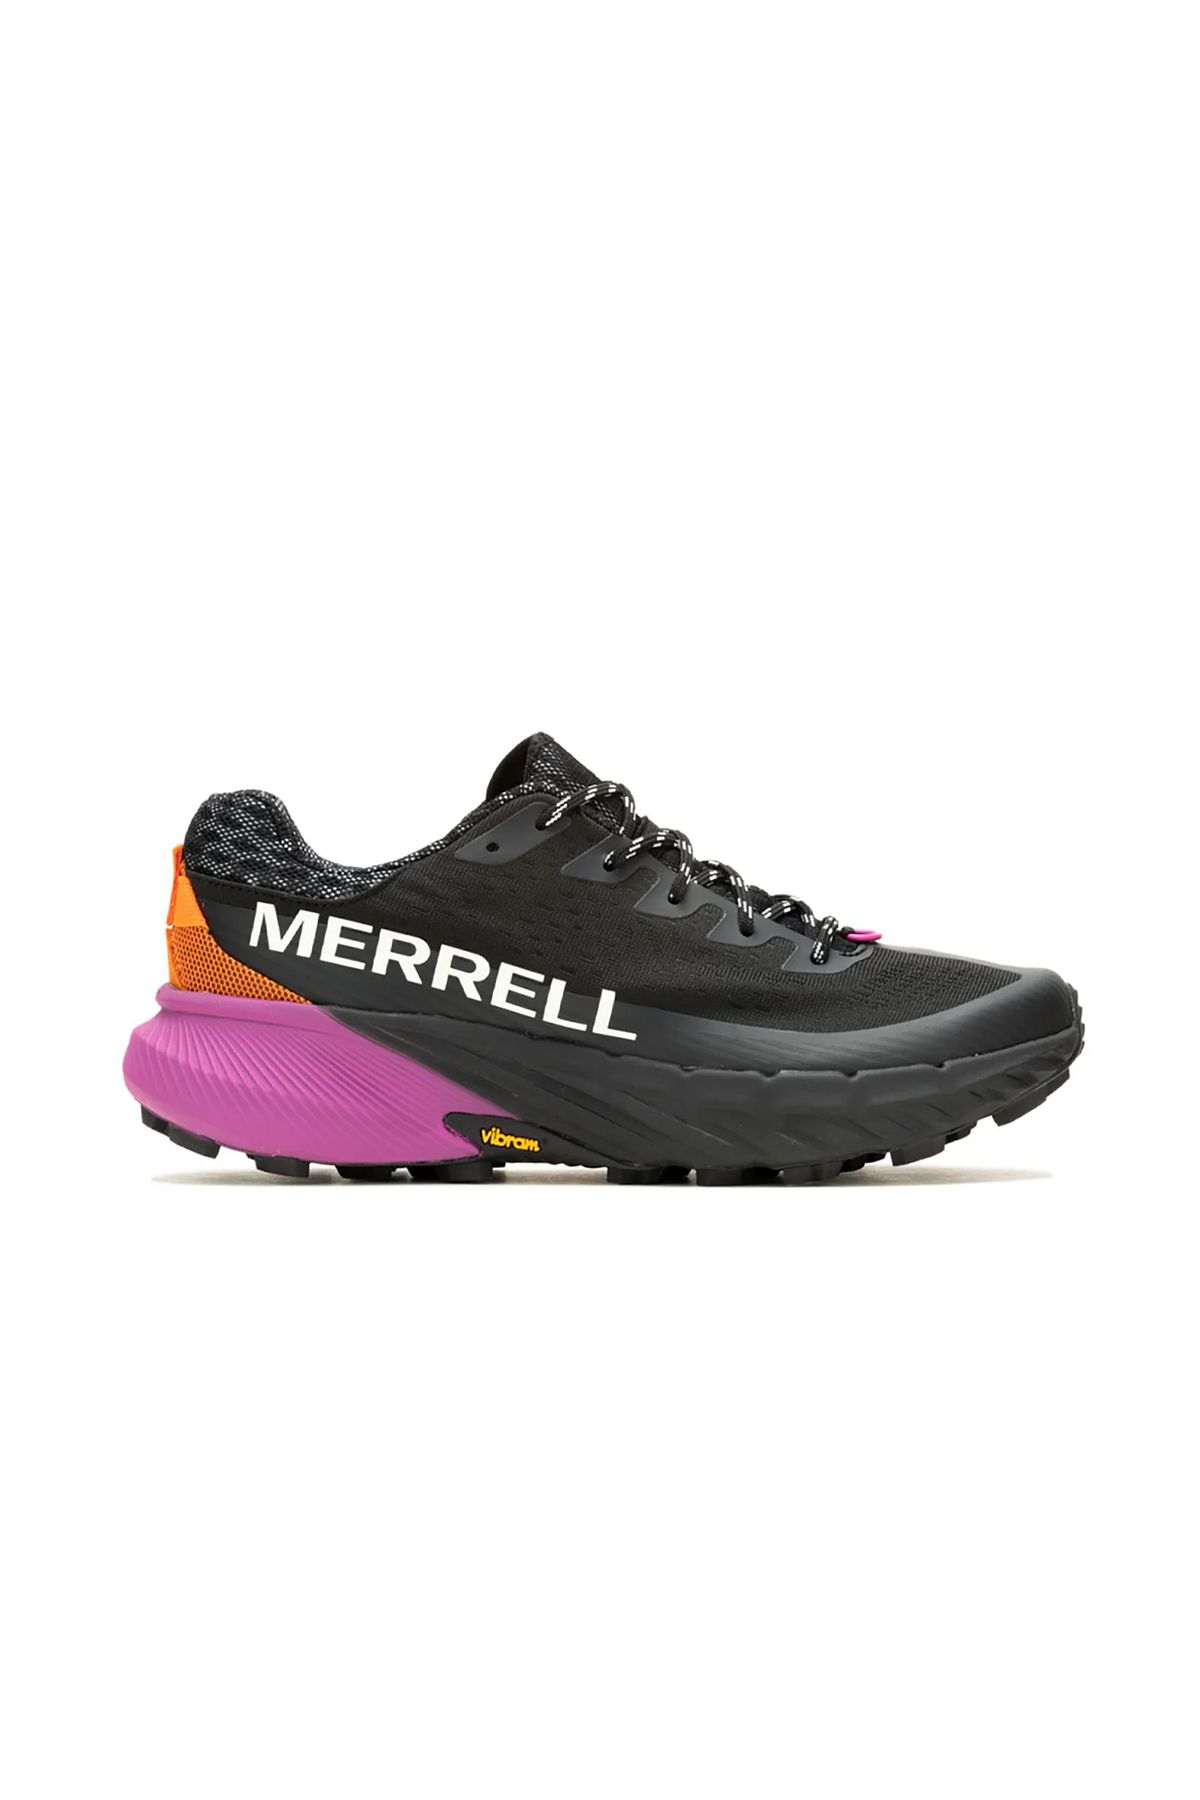 Merrell Agility Peak 5 Patika Koşu Ayakkabısı Siyah